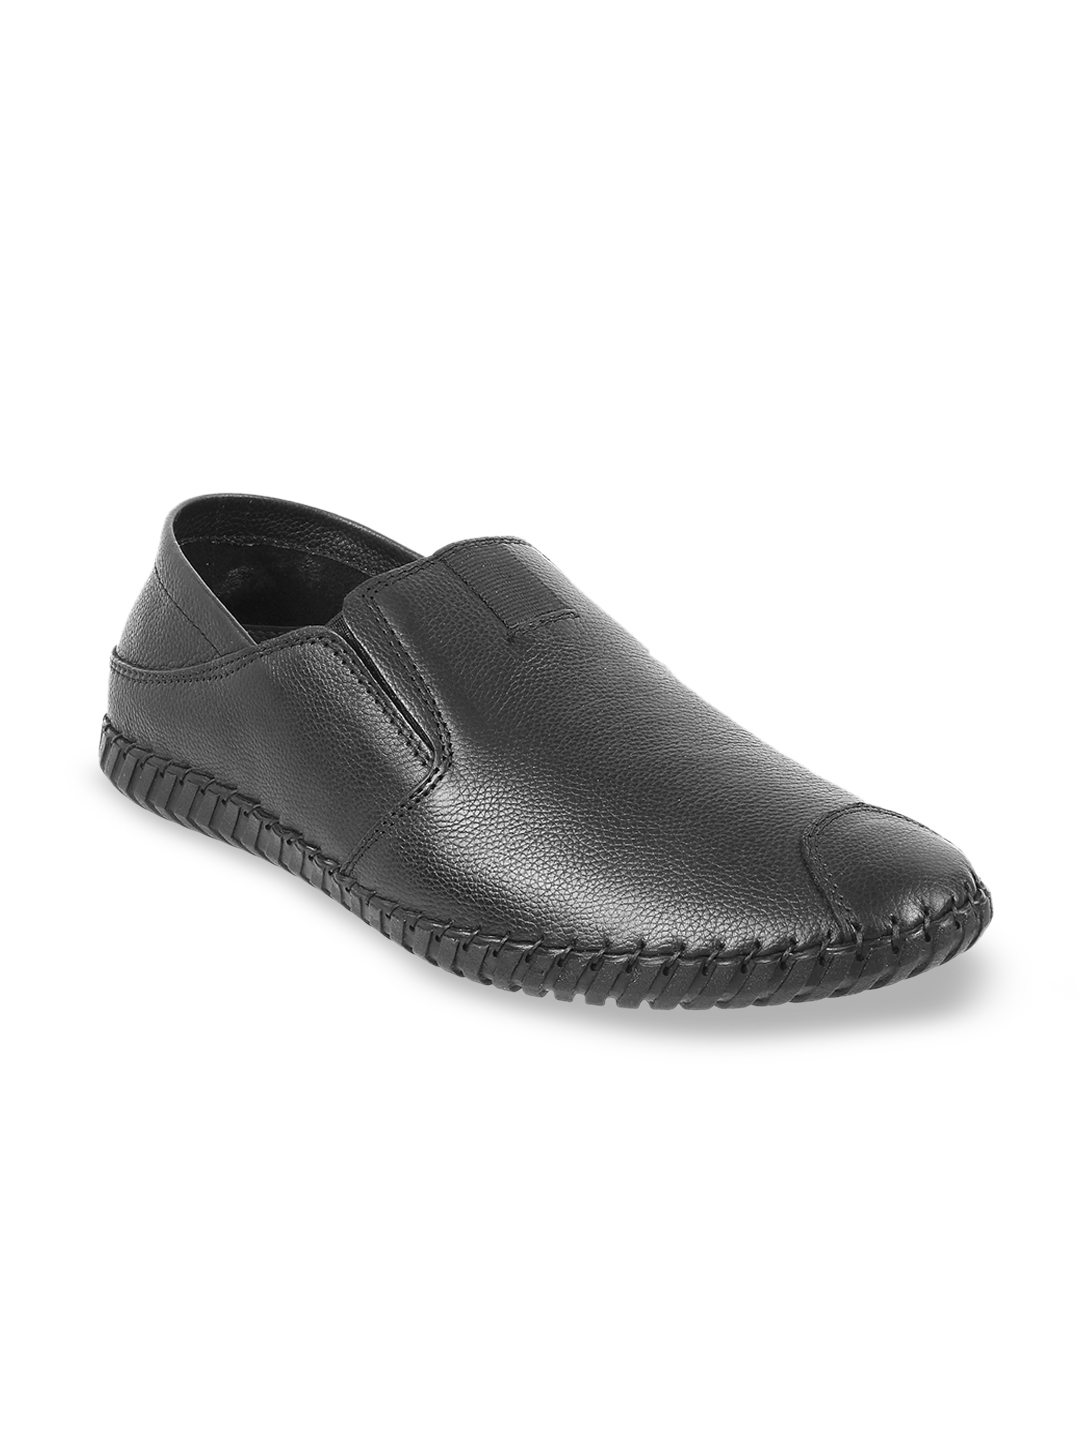 Buy Mochi Men Black Solid Leather Slip On Formal Shoes - Formal Shoes ...